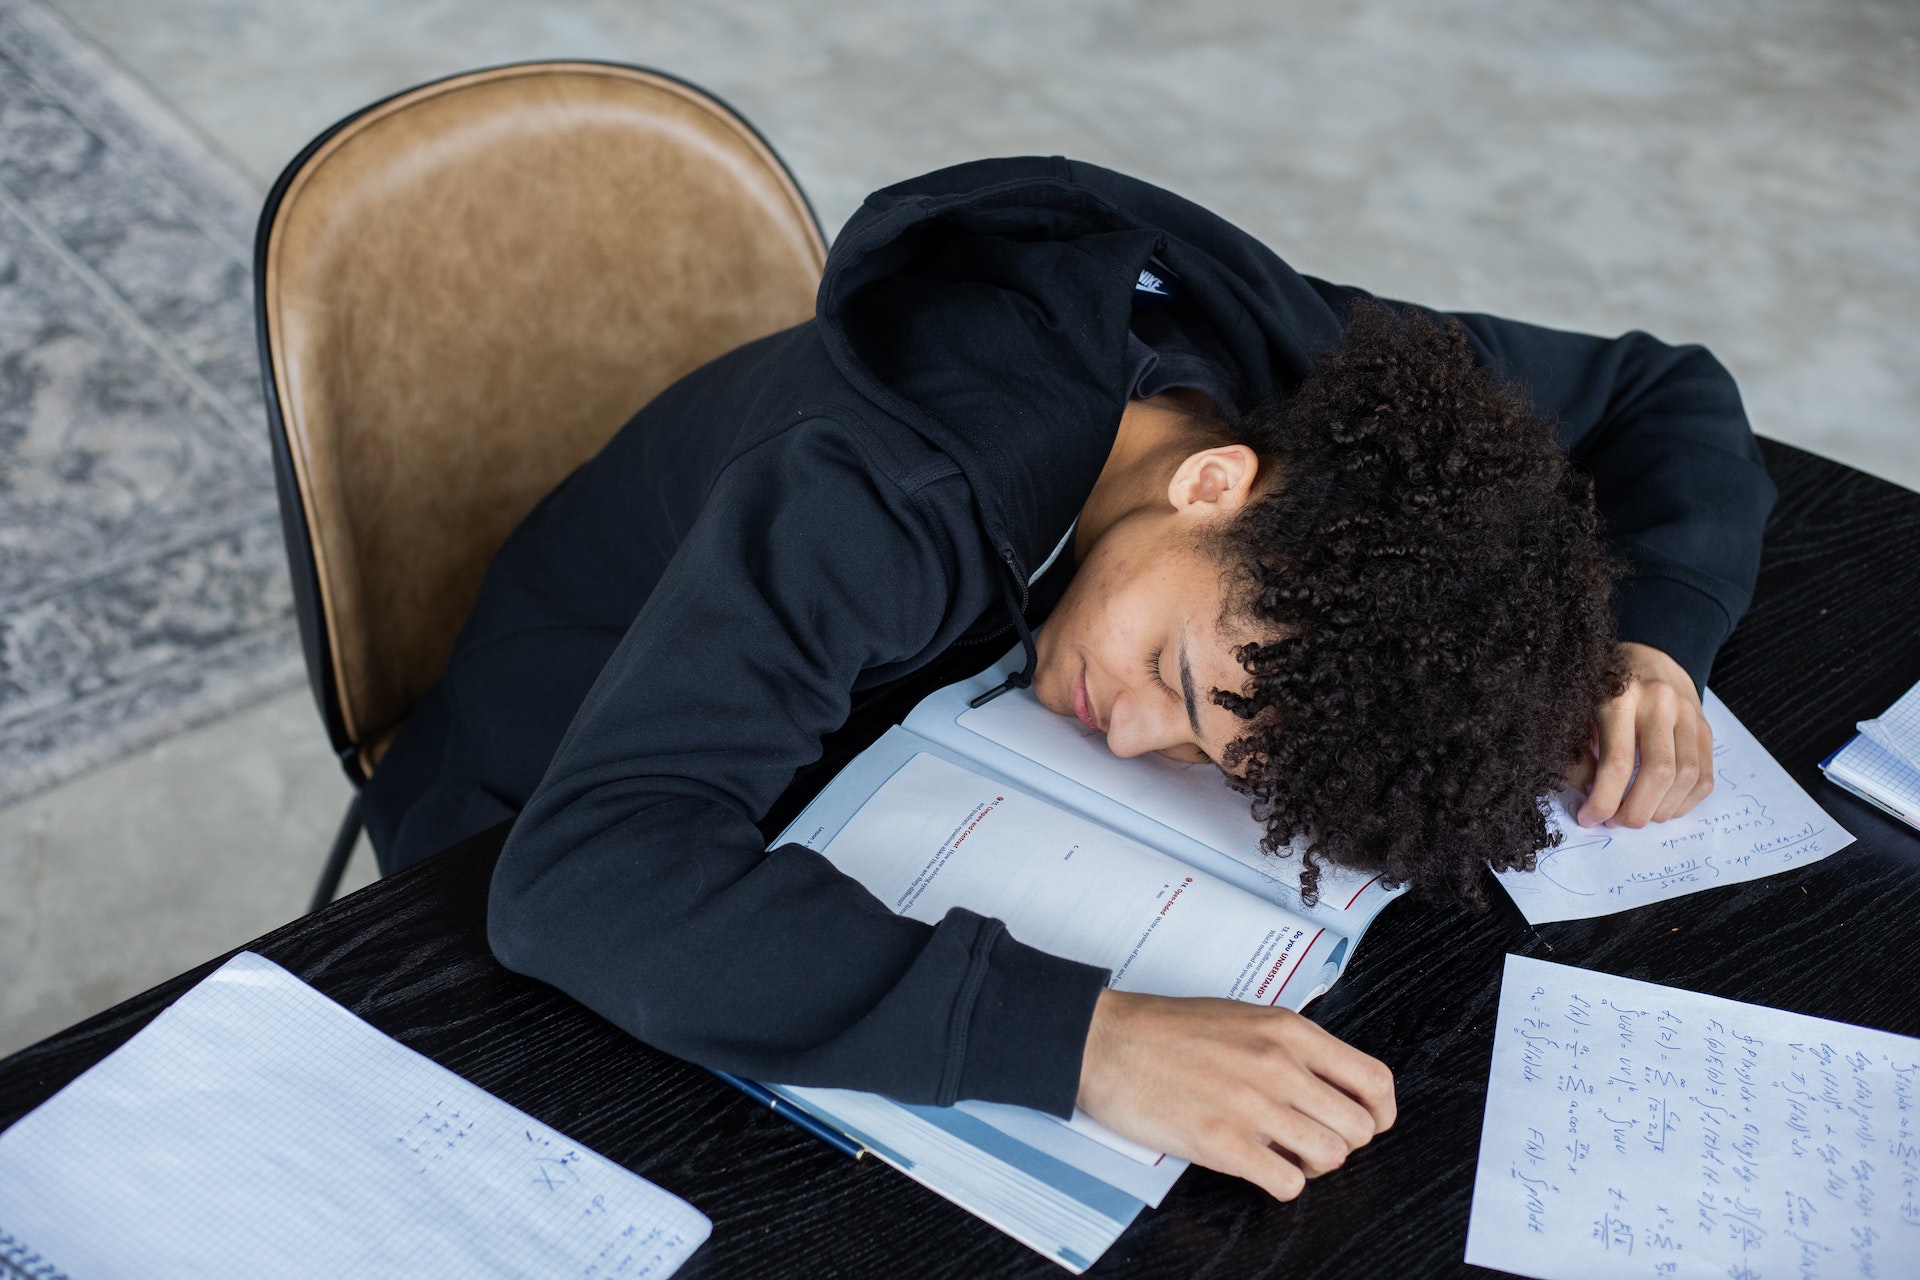 مرد خسته در حین درس خواندن - 5 دلیل برای اینکه همیشه احساس خستگی می کنید، به علاوه نکاتی برای افزایش انرژی شما